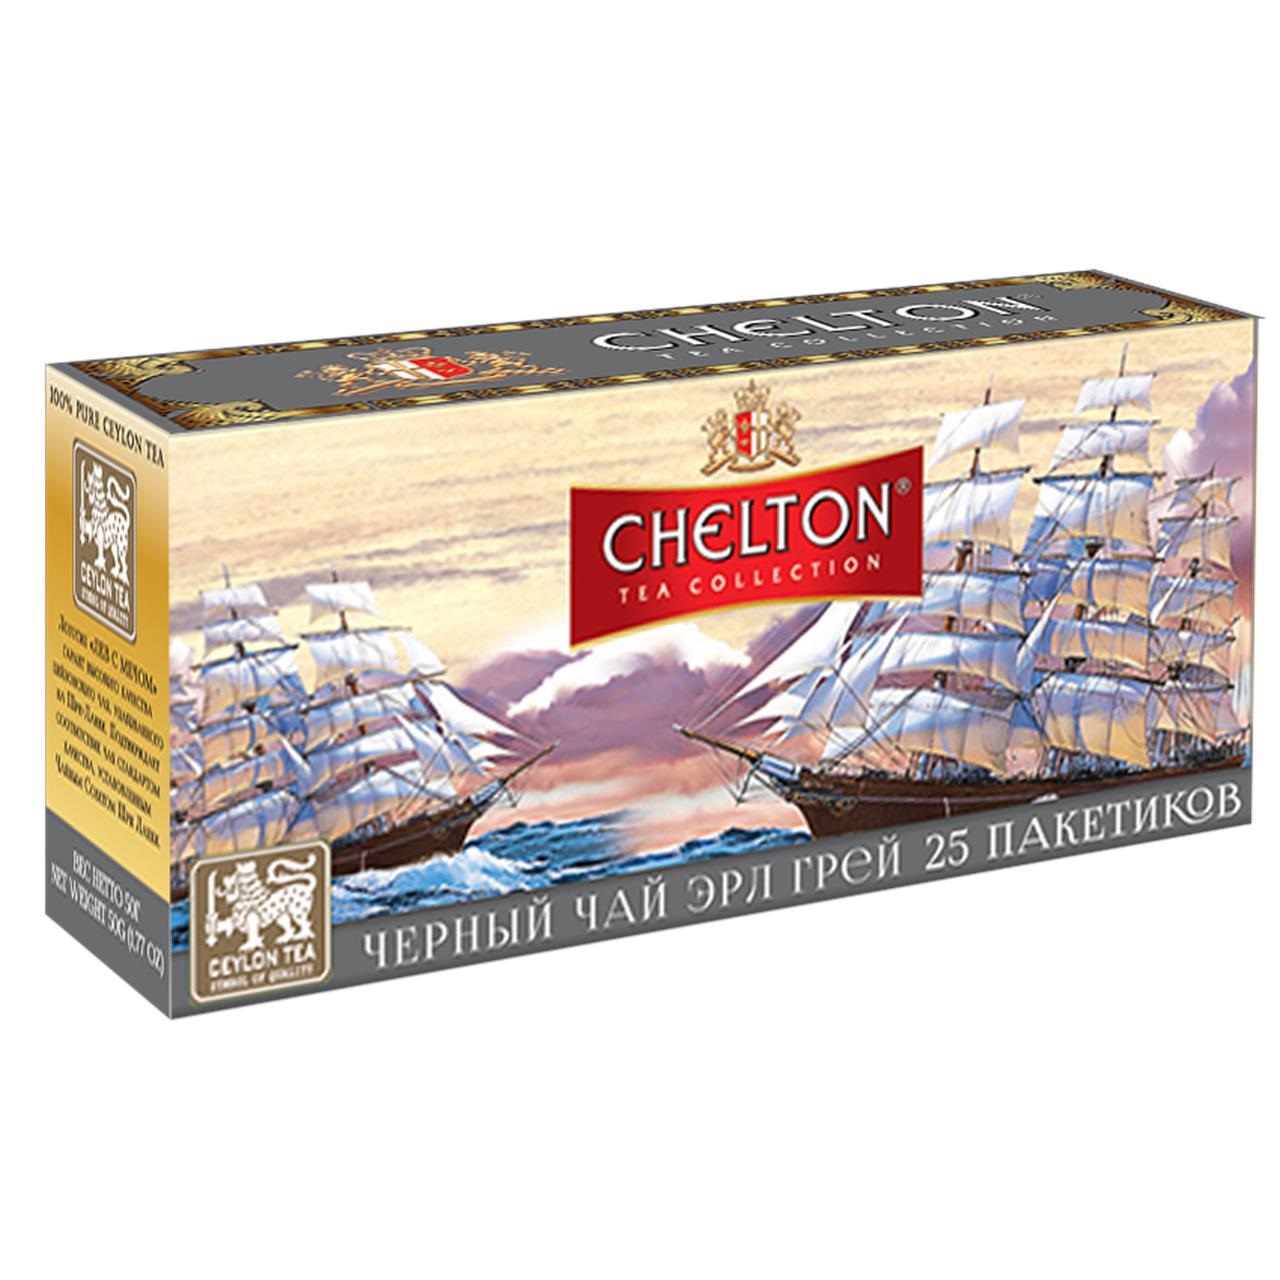 Черный чай Chelton Английский, с маслом бергамота, 25 пакетиков по 1,5 гр